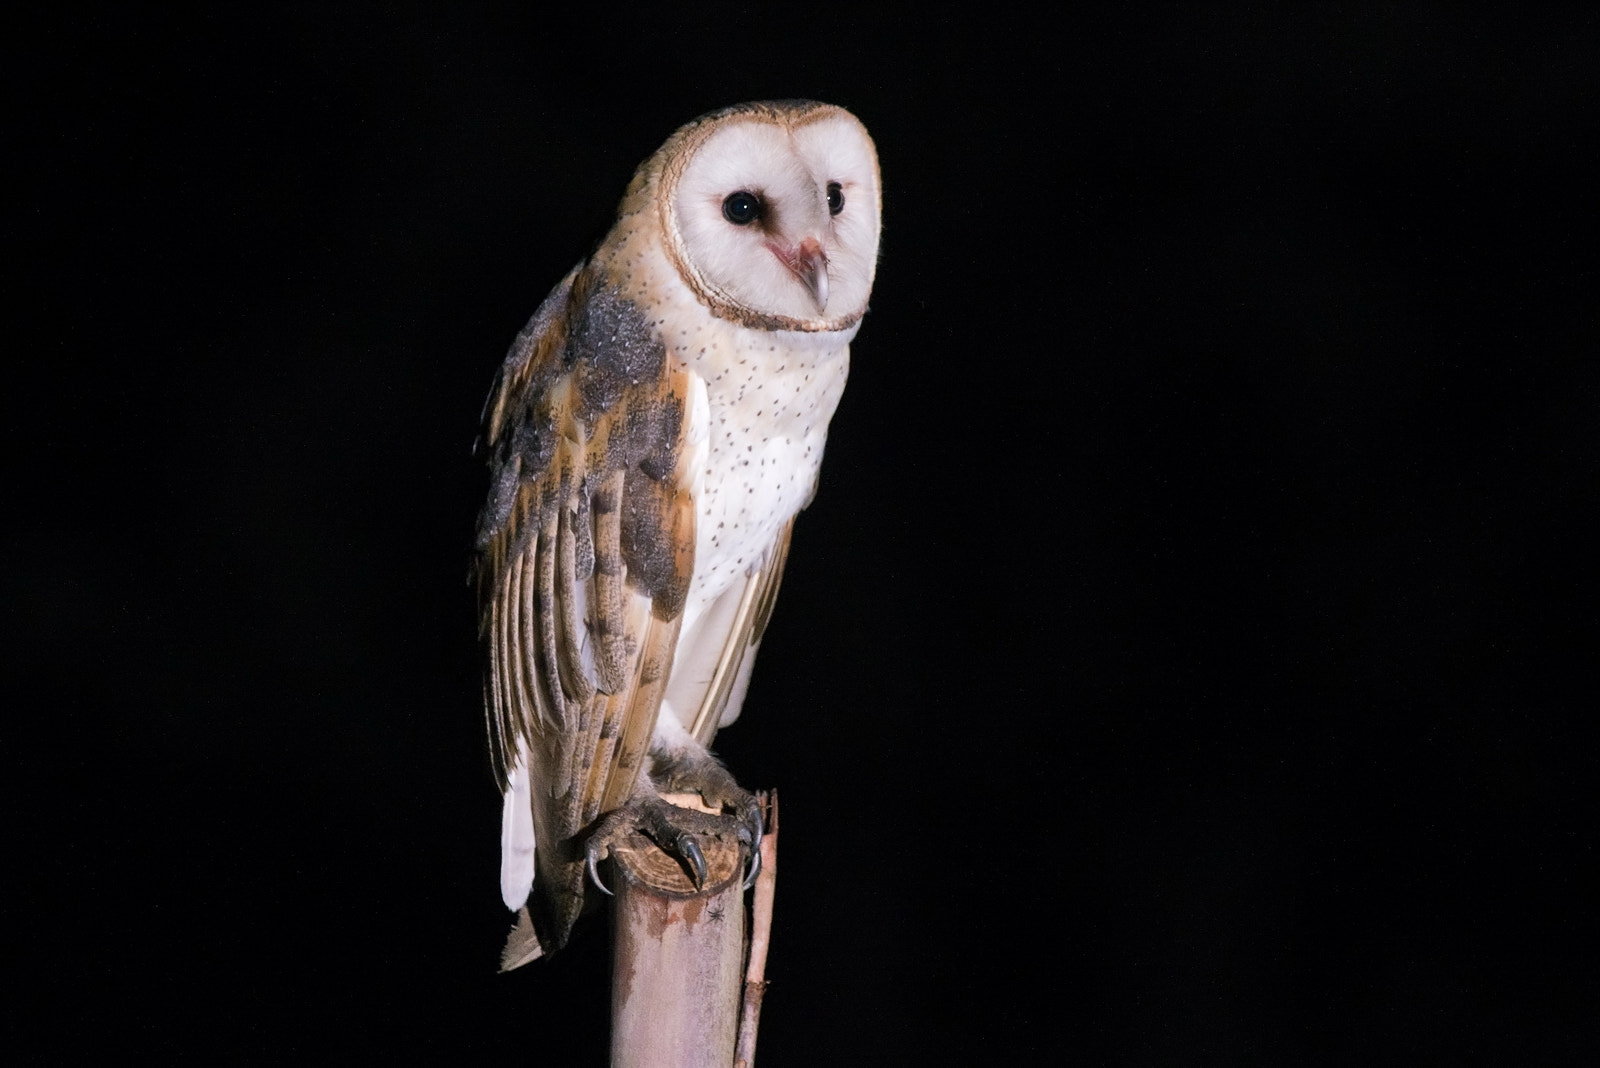 Nikon D800 sample photo. White owl photography